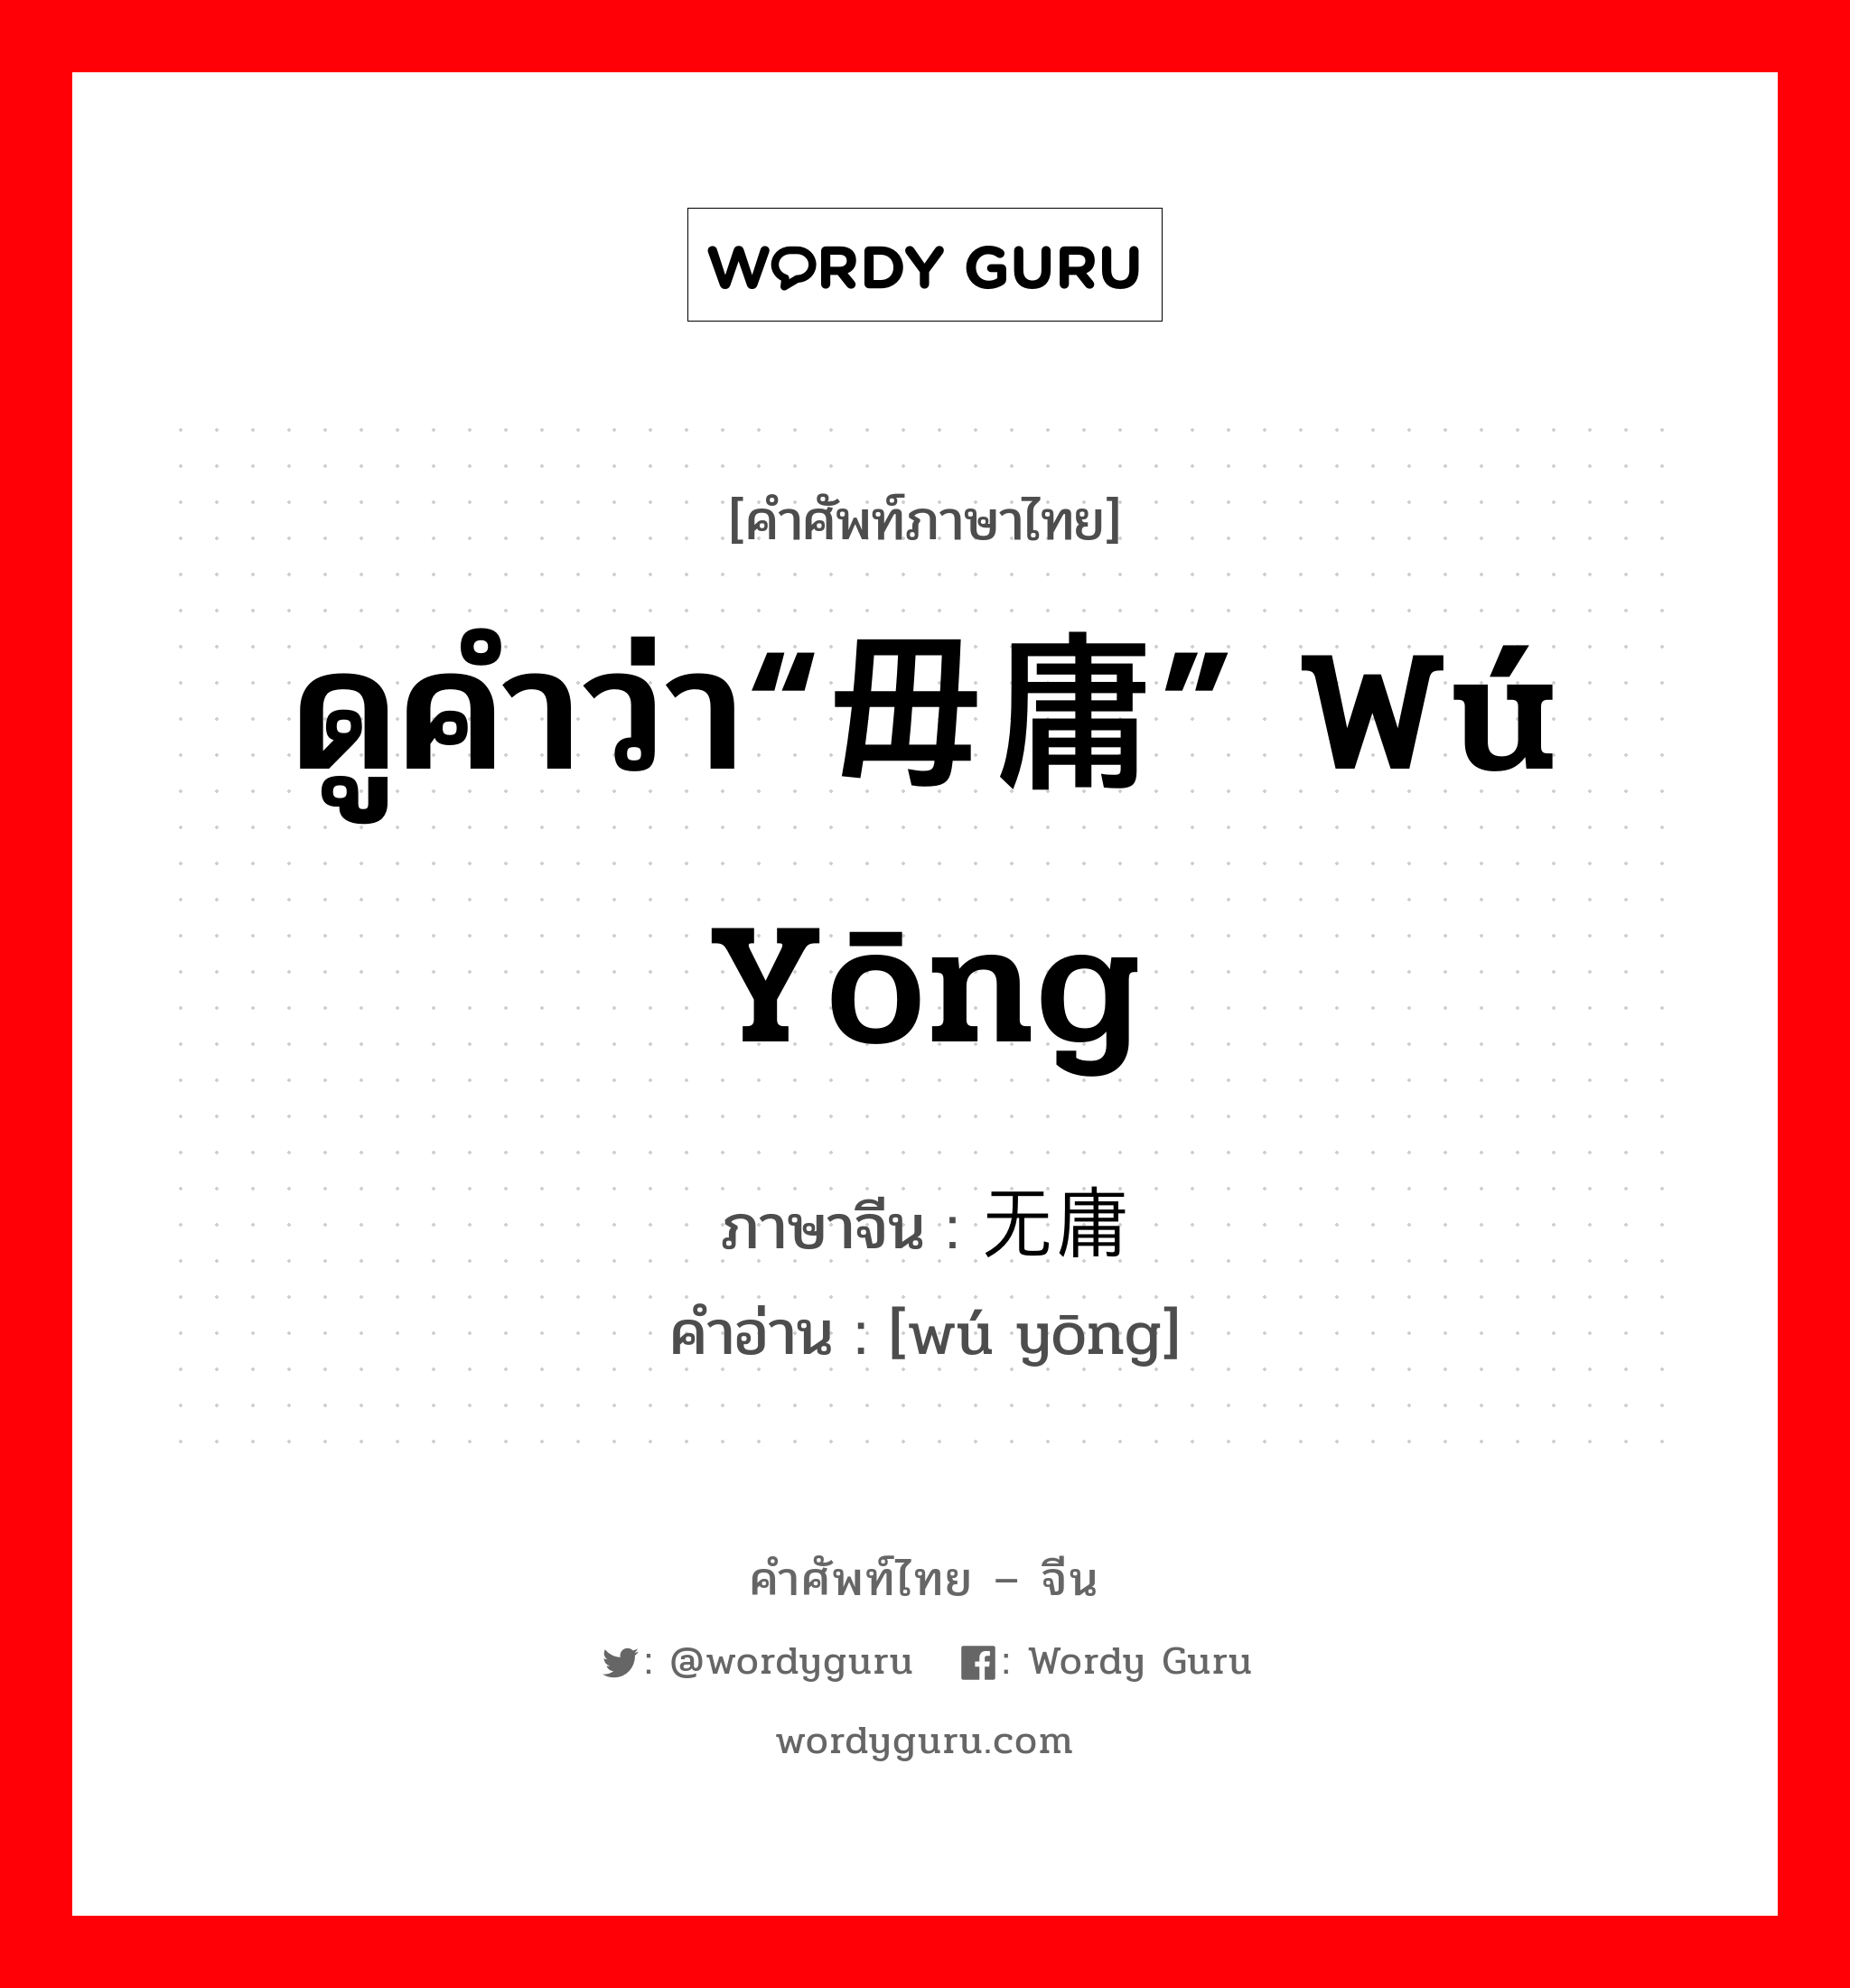 ดูคำว่า“毋庸” wú yōng ภาษาจีนคืออะไร, คำศัพท์ภาษาไทย - จีน ดูคำว่า“毋庸” wú yōng ภาษาจีน 无庸 คำอ่าน [wú yōng]